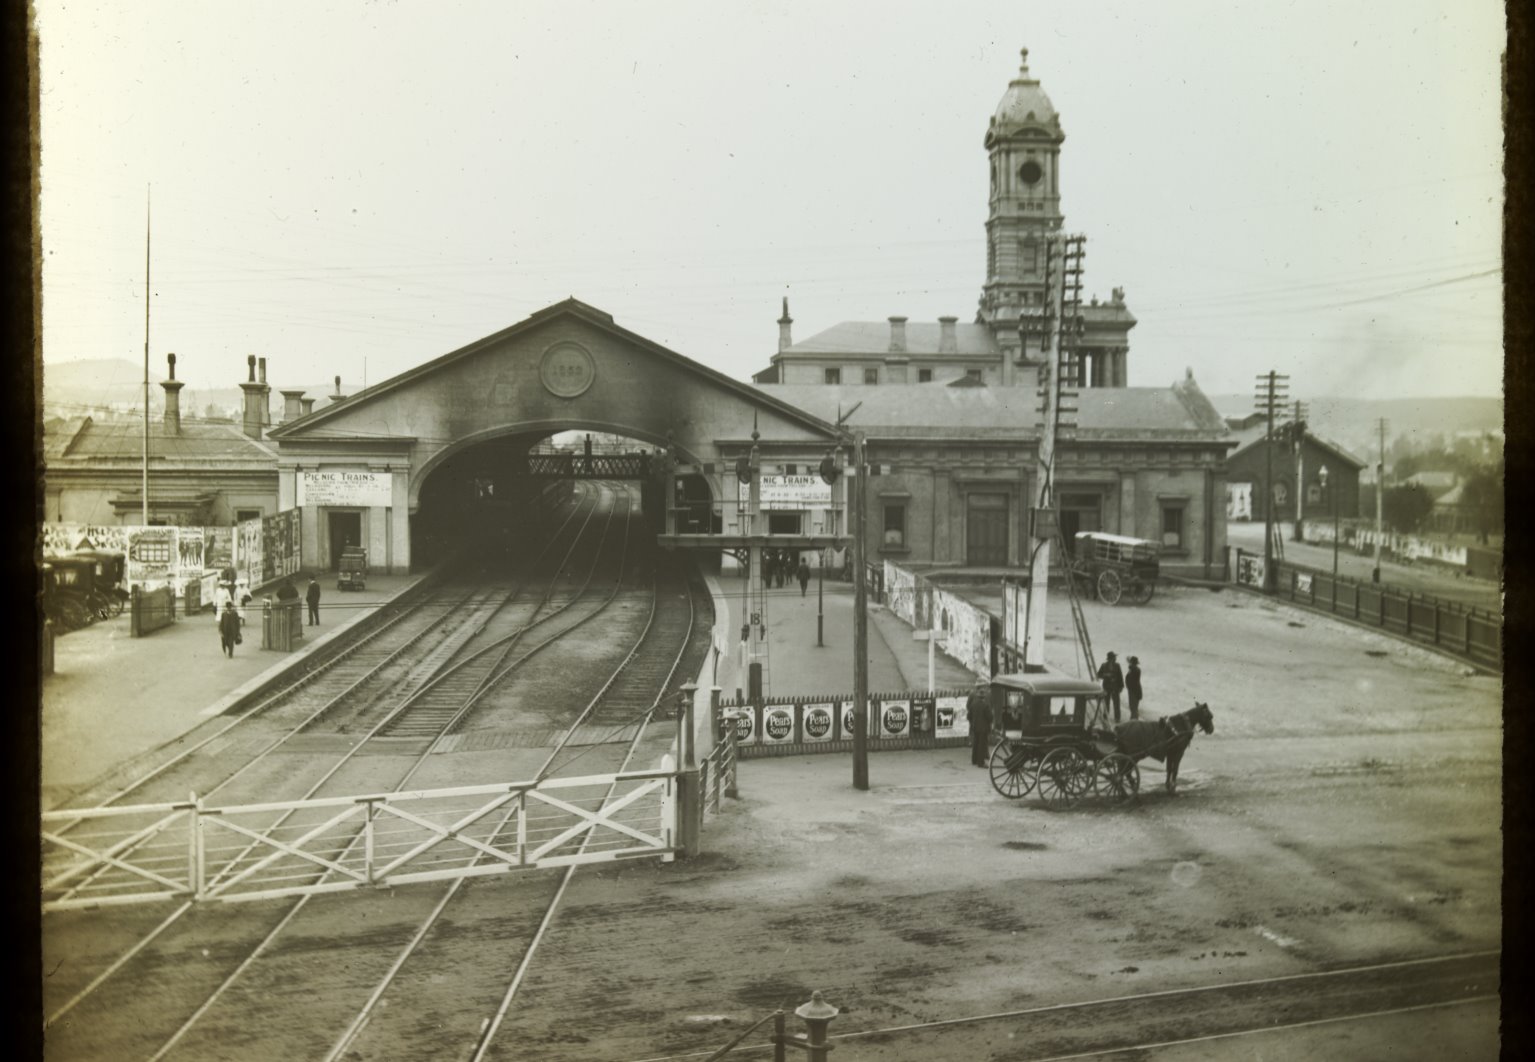 Ballarat Railway Station